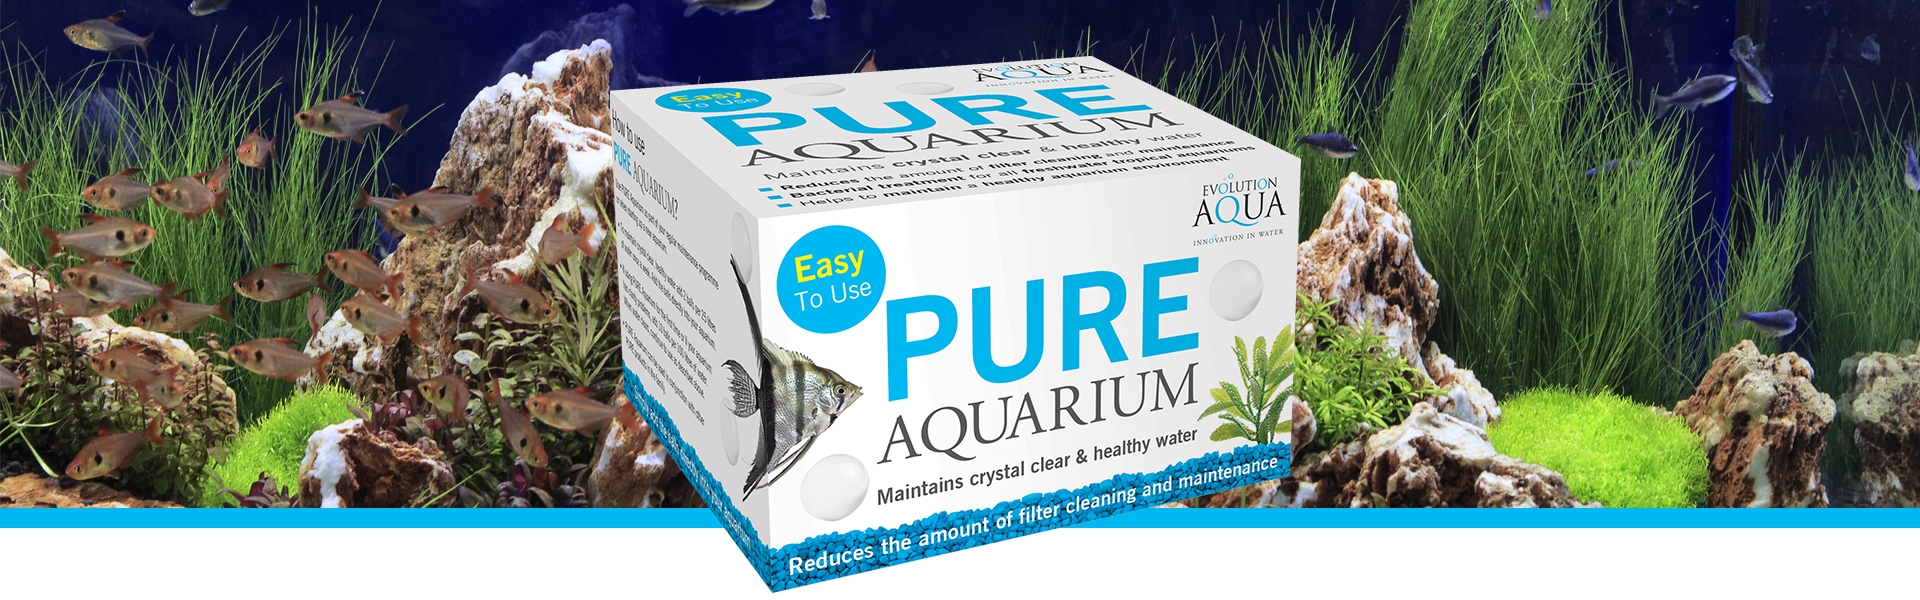 Pure Aquarium